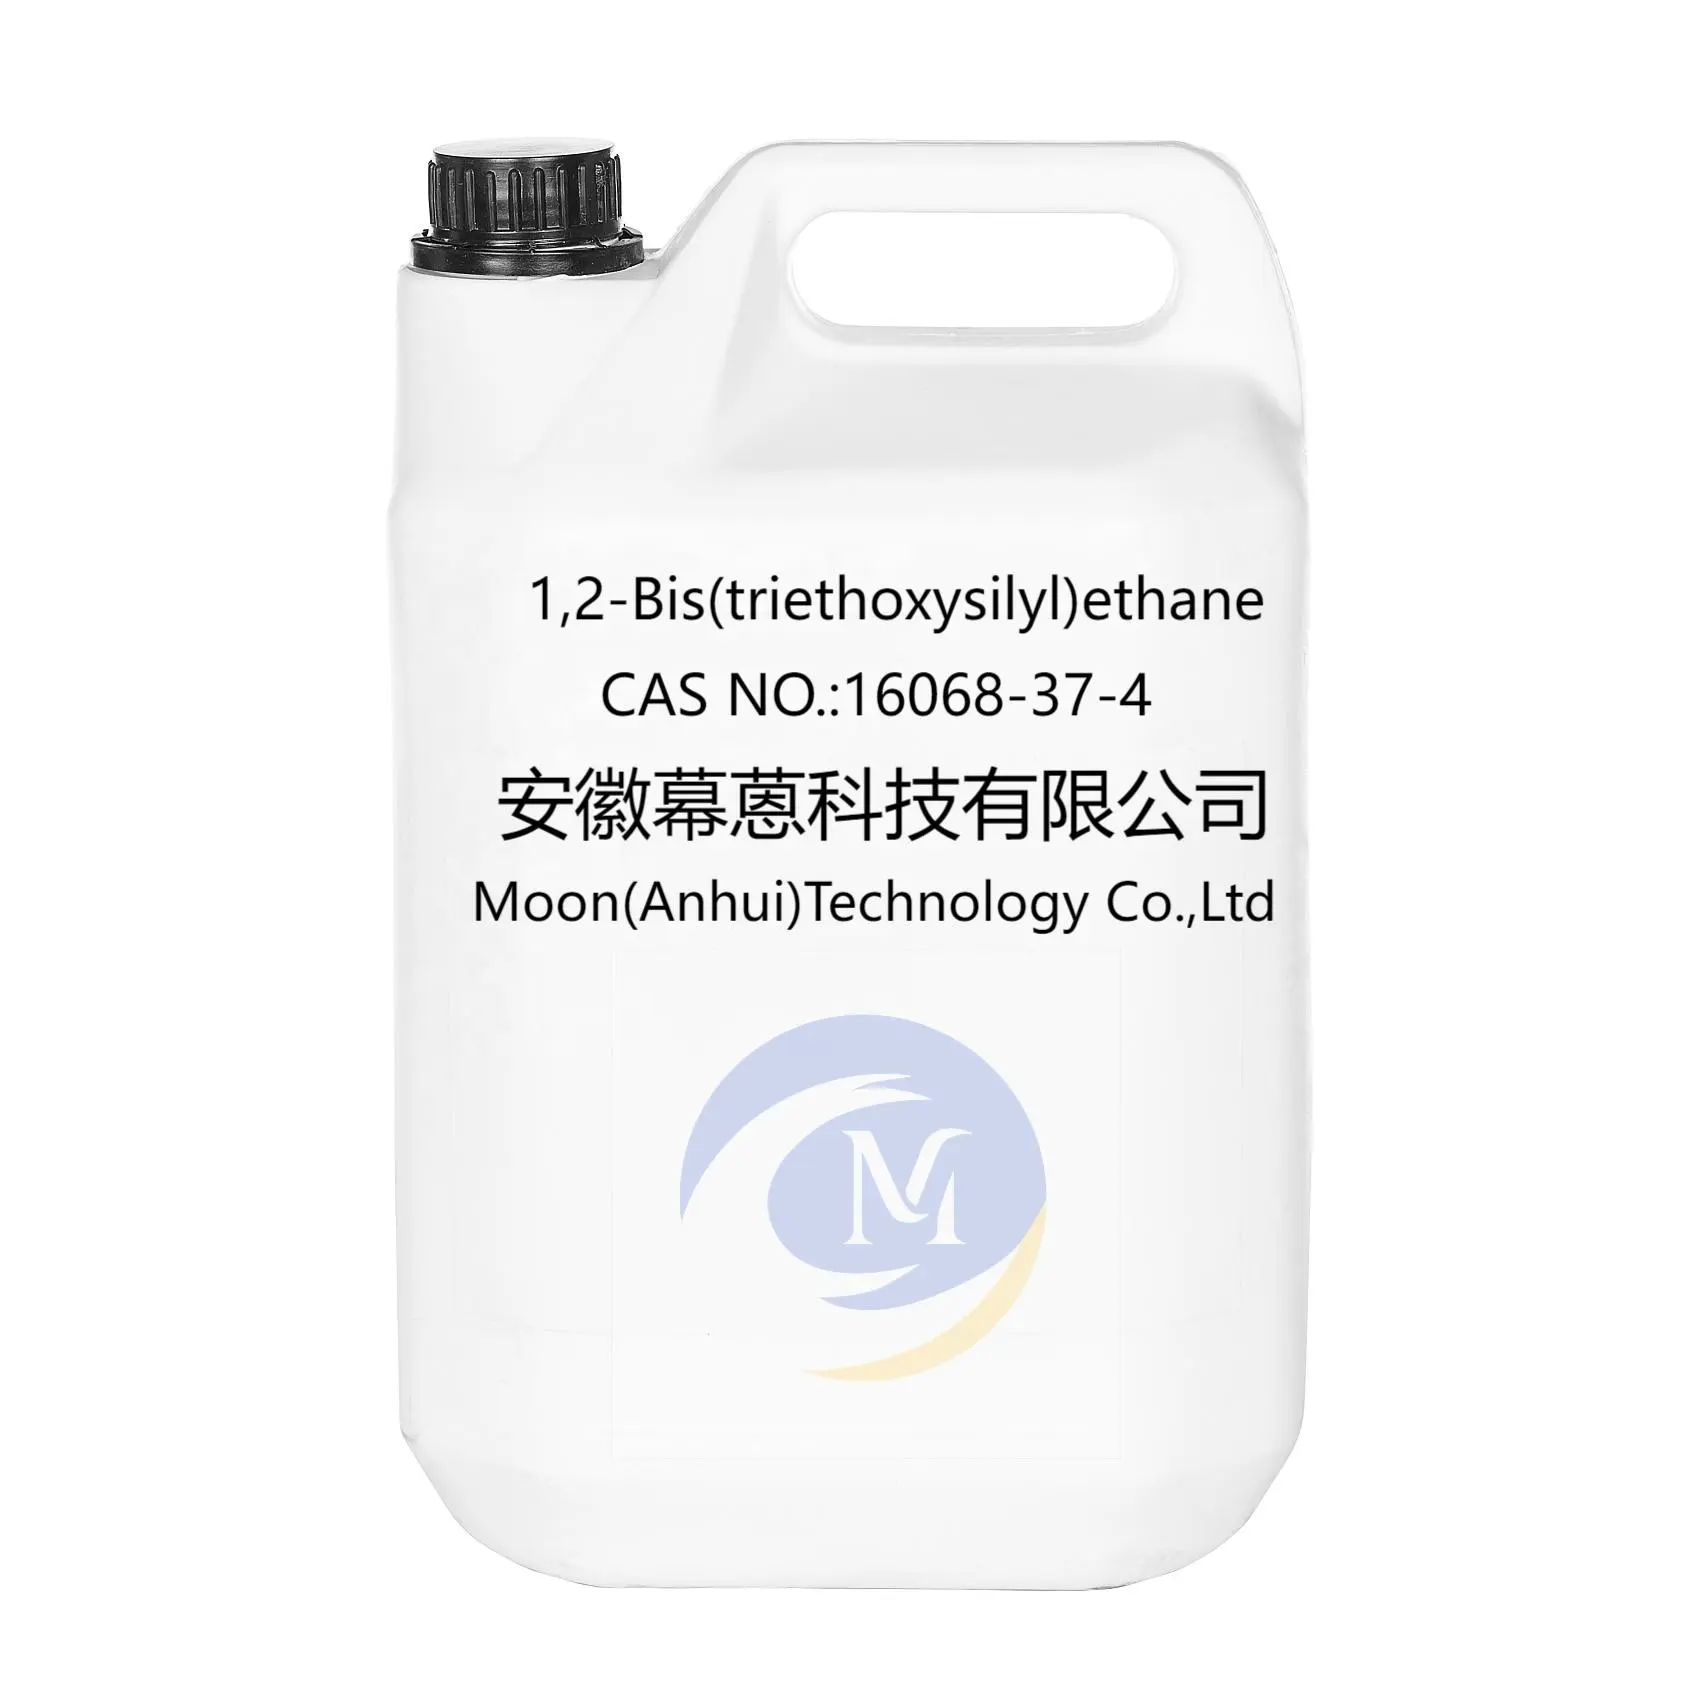 फैक्टरी मूल्य उच्च गुणवत्ता बिस (ट्राएथॉक्सिसिल) इथेन/1,2-बीआईएस (ट्राएथॉक्सिसिल) इथेन सीएएस 16068-37-4 रसायन कच्चा माल